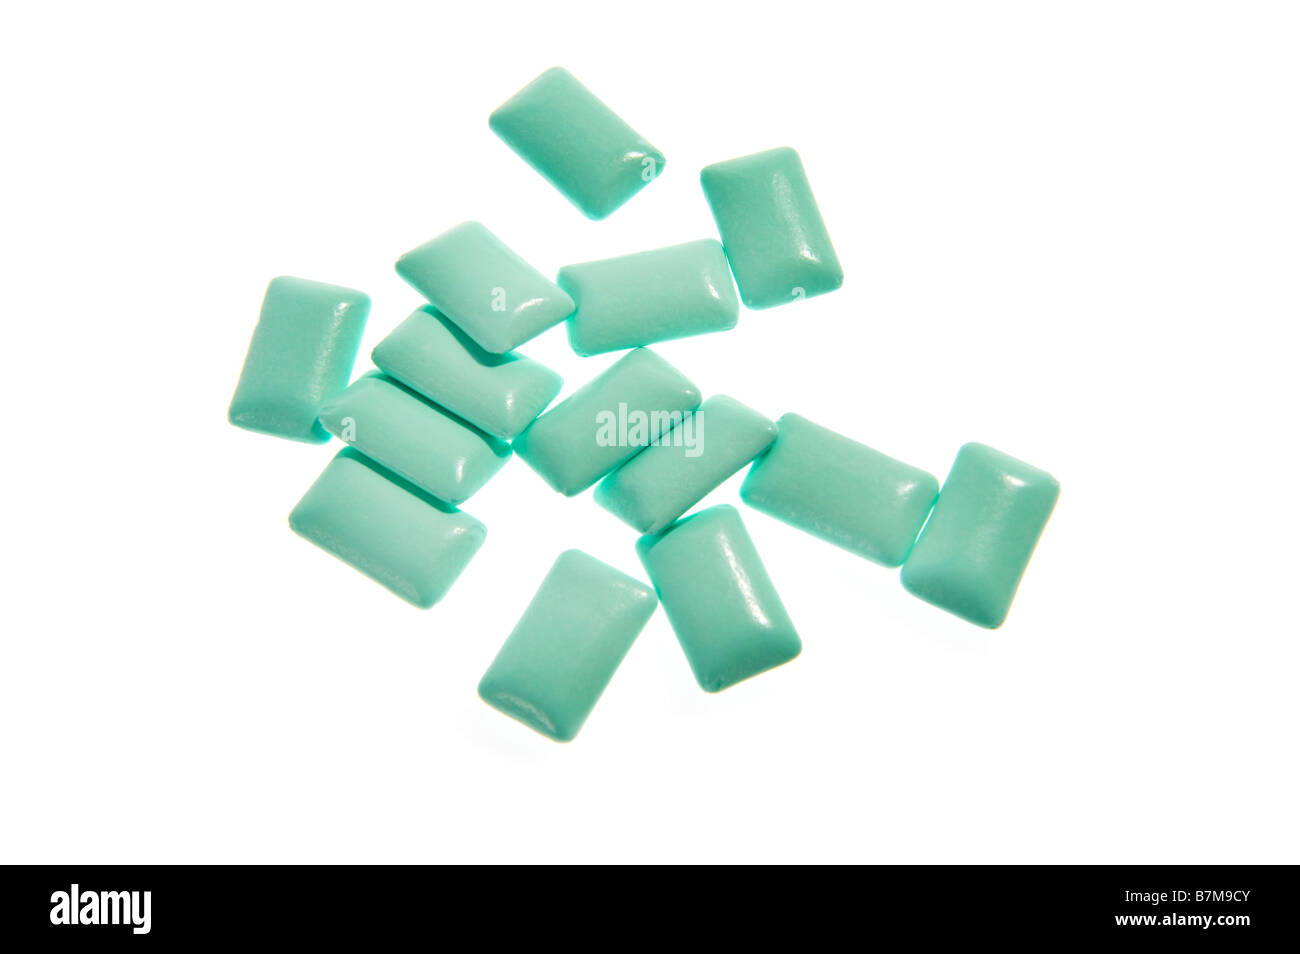 La gomma da masticare bubble gum verde blu ciano su sfondo bianco pezzi jelly baby candy orsetti di gomma gomma gummi di menta romana fresca Foto Stock